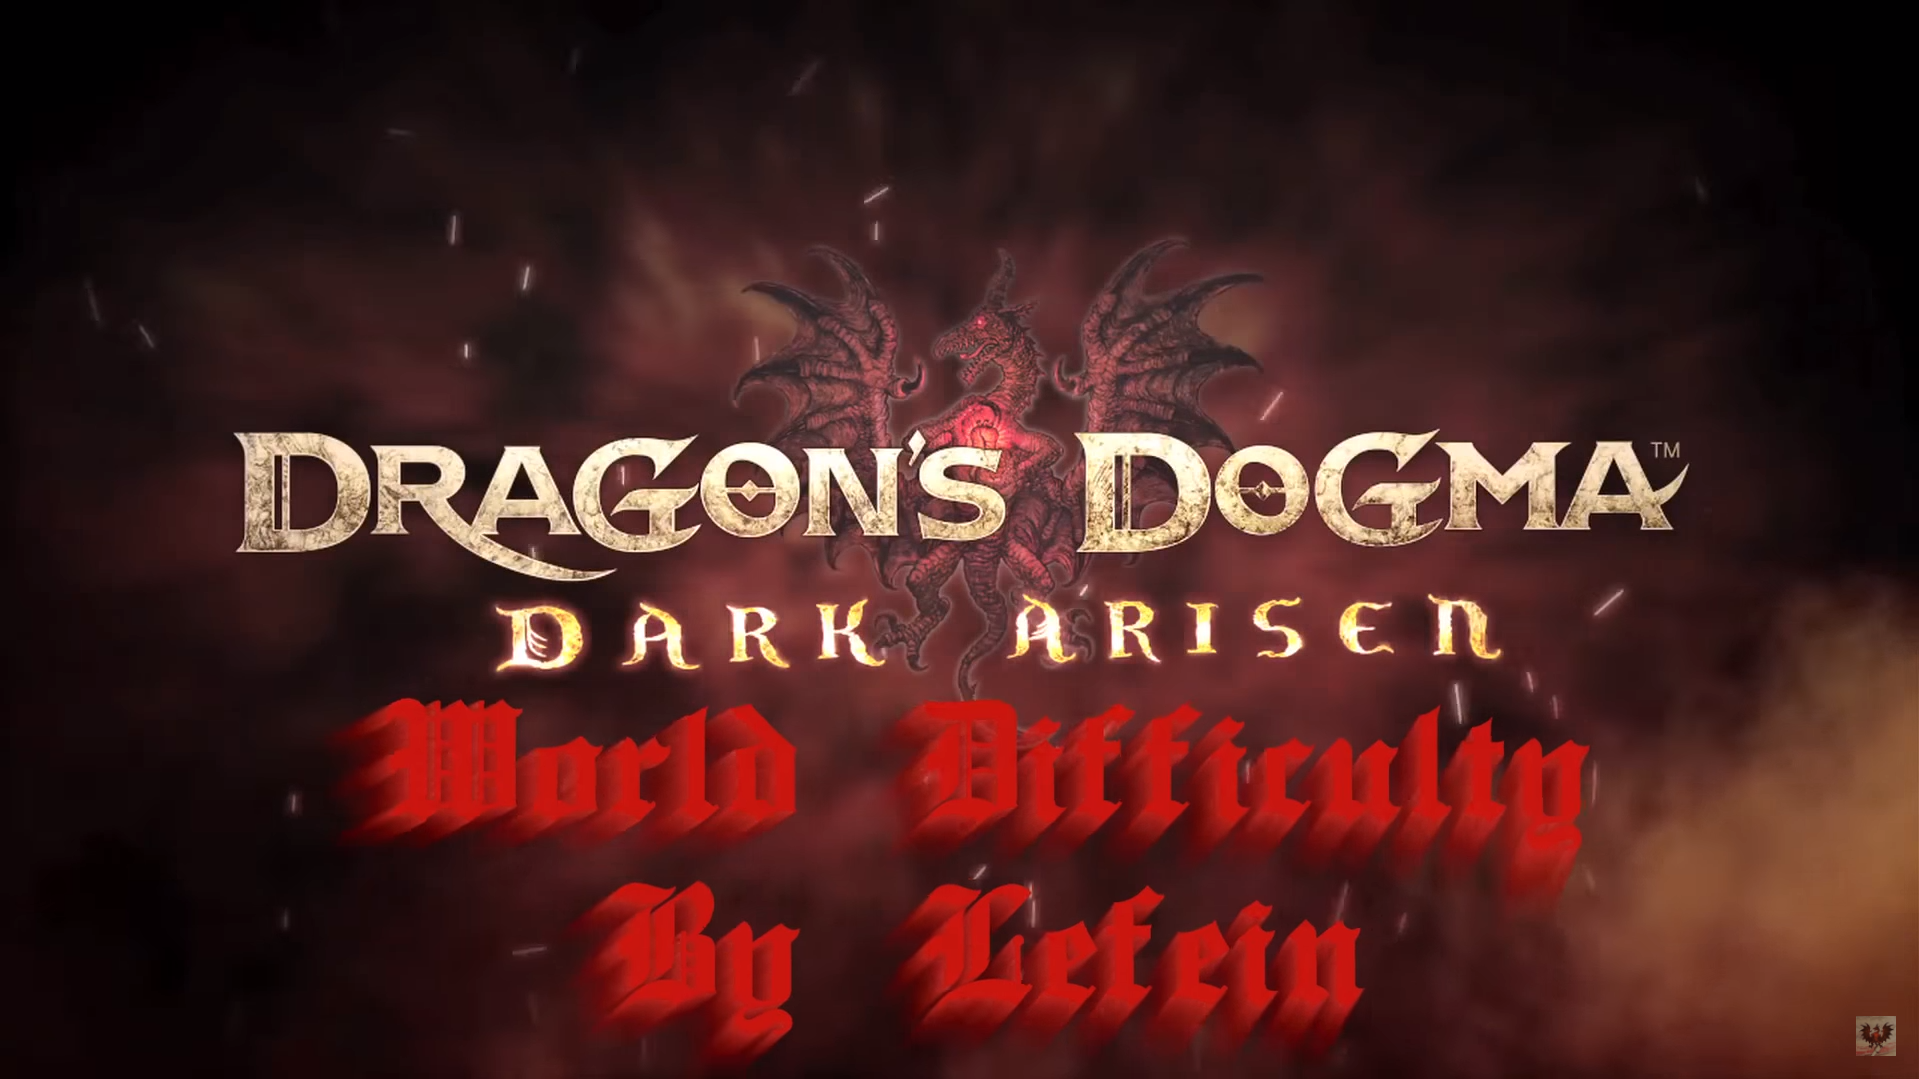 Como fazer download de mods em Dragon's Dogma: Dark Arisen